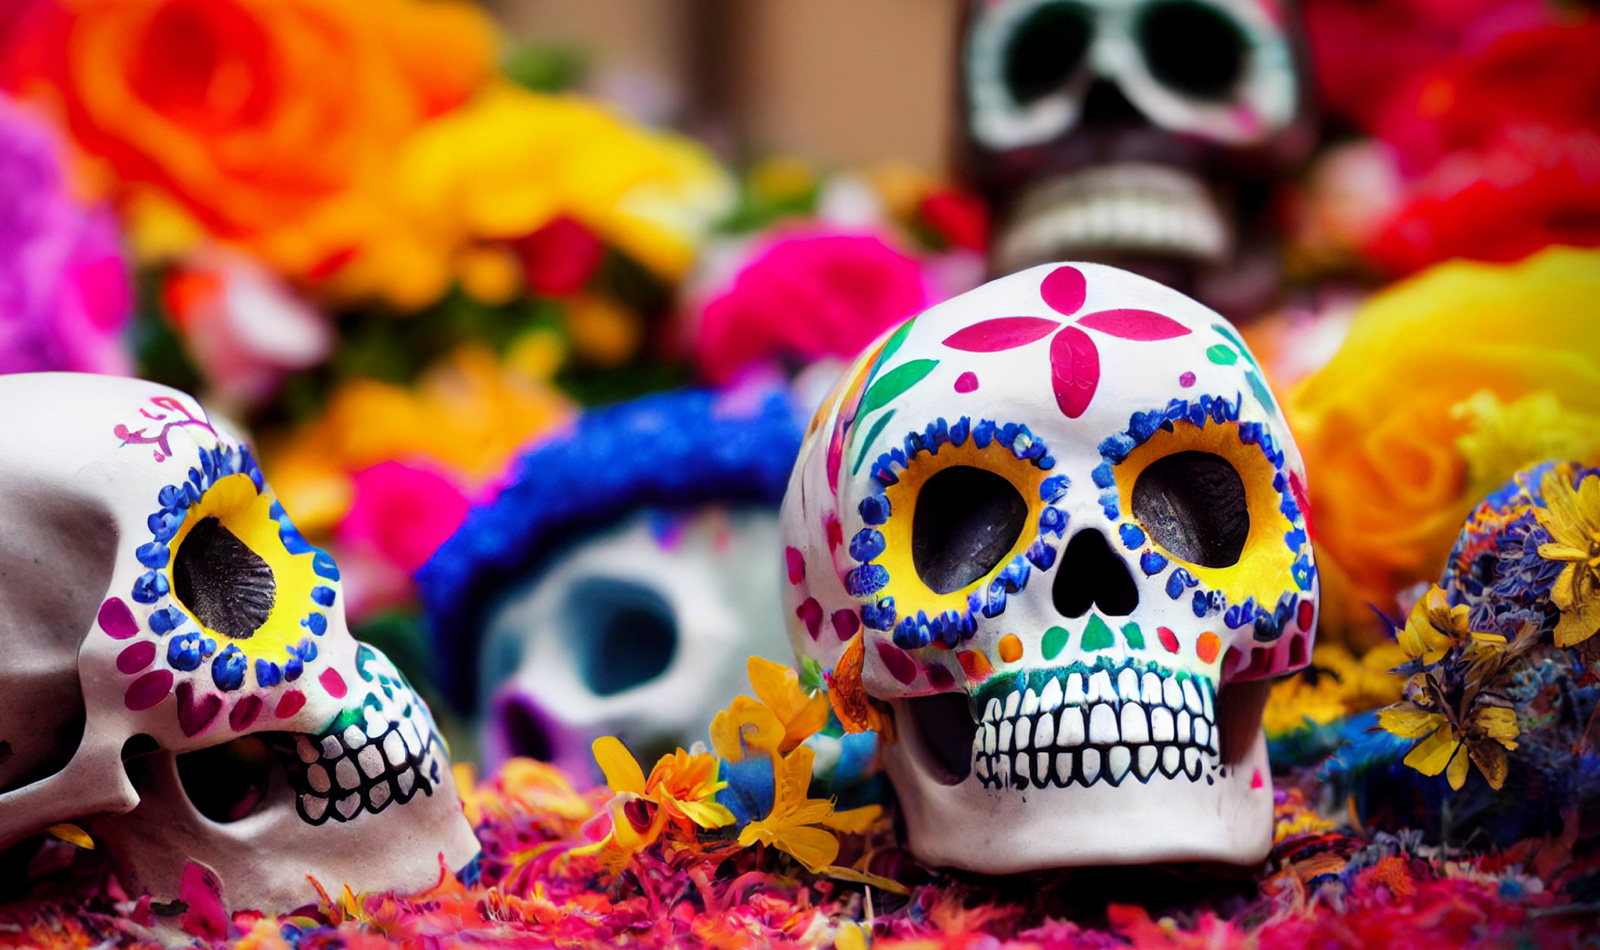 Decorations for El Dia de los Muertos